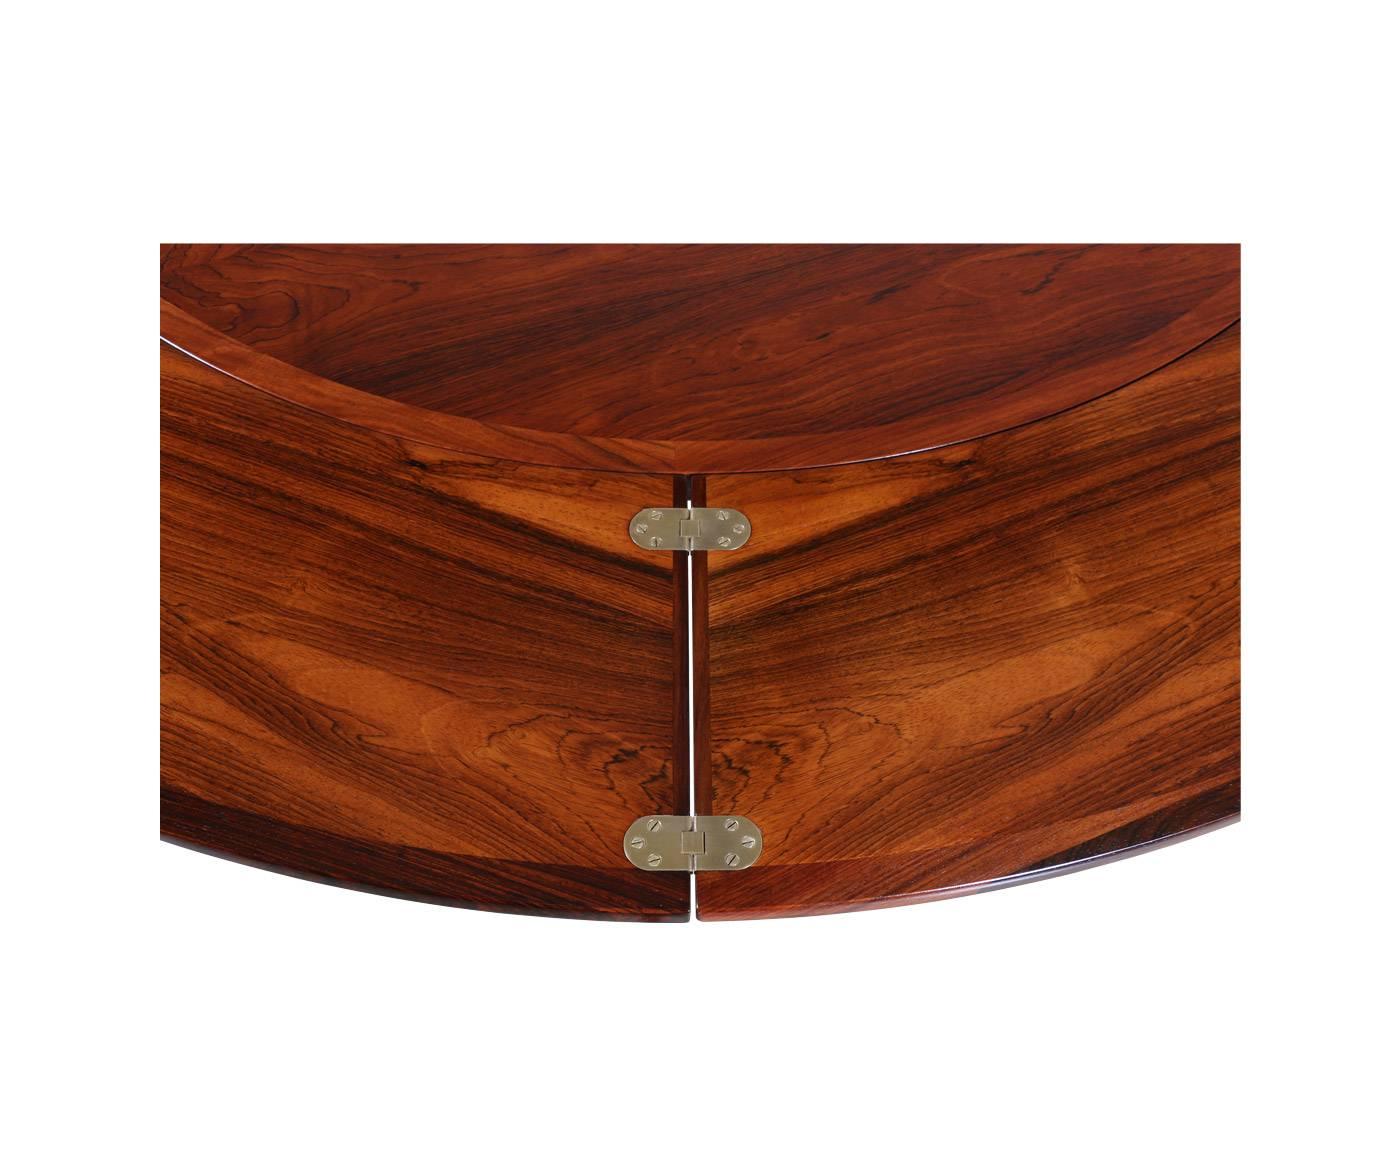 Danish Modern “Flip Flap” Rosewood Dining Table by Dyrlund 1